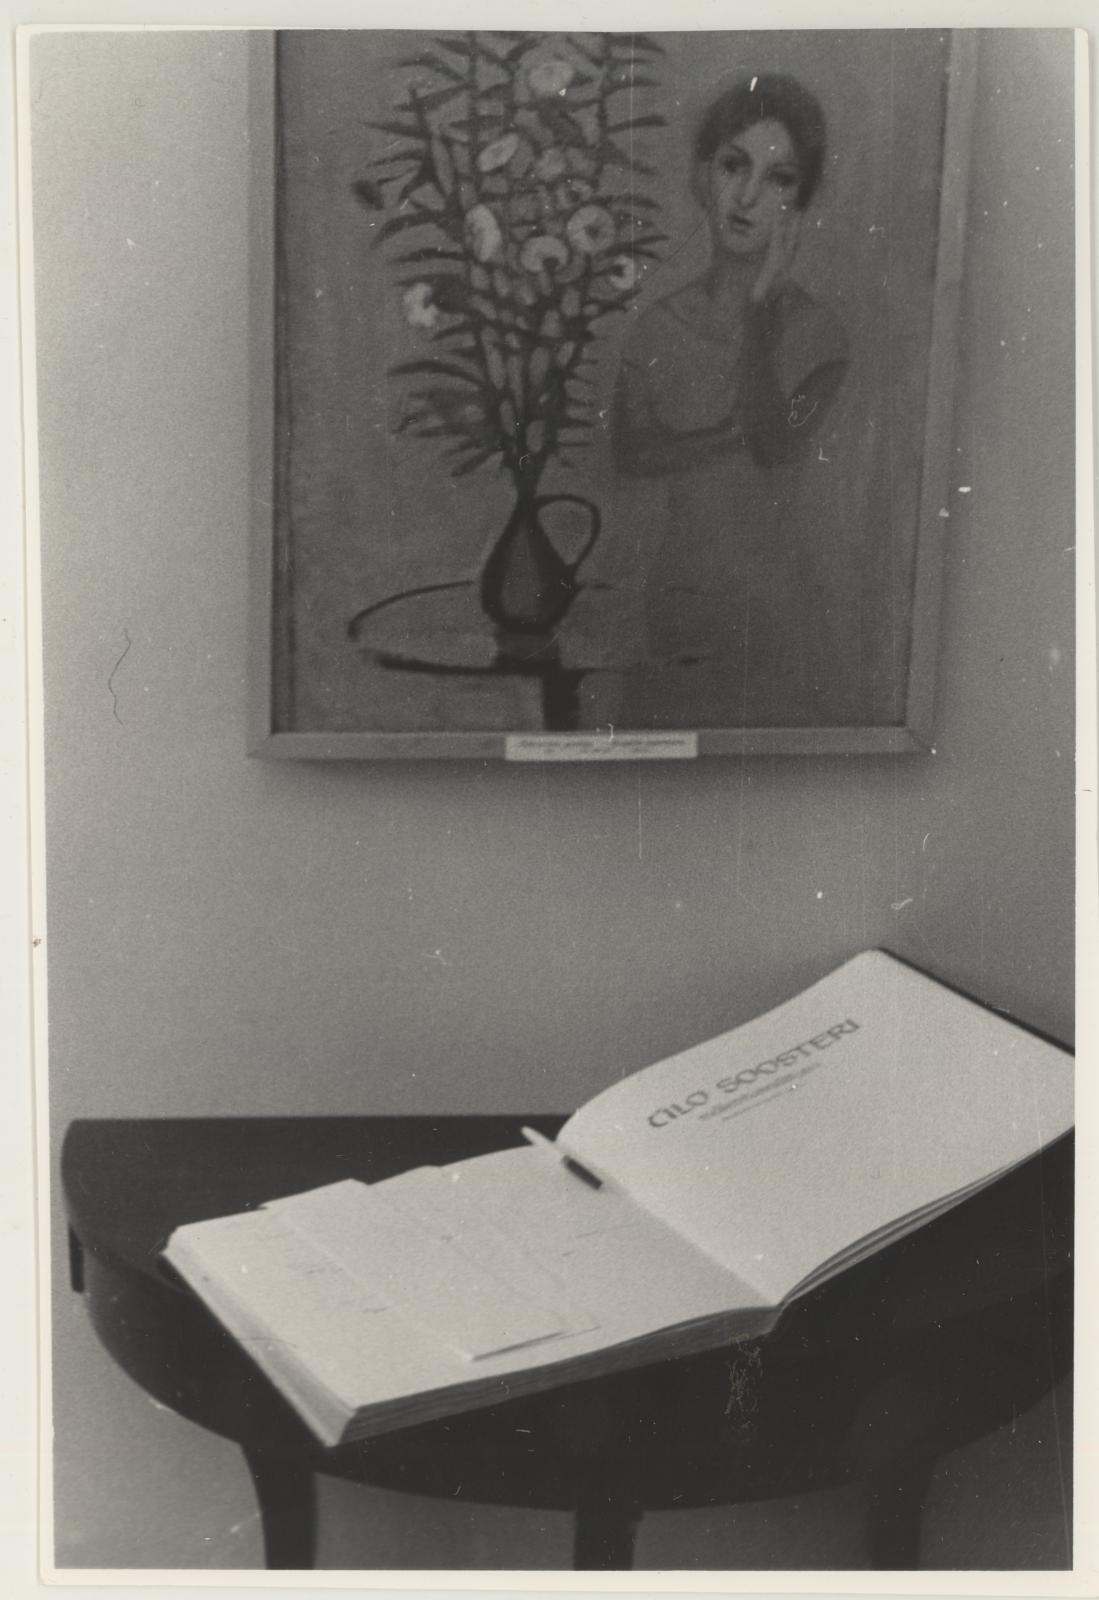 Ülo Soosteri teoste näituse avamine 10.04.1971. I korrusel. Külastajate märkmete raamat näitusesaalis.